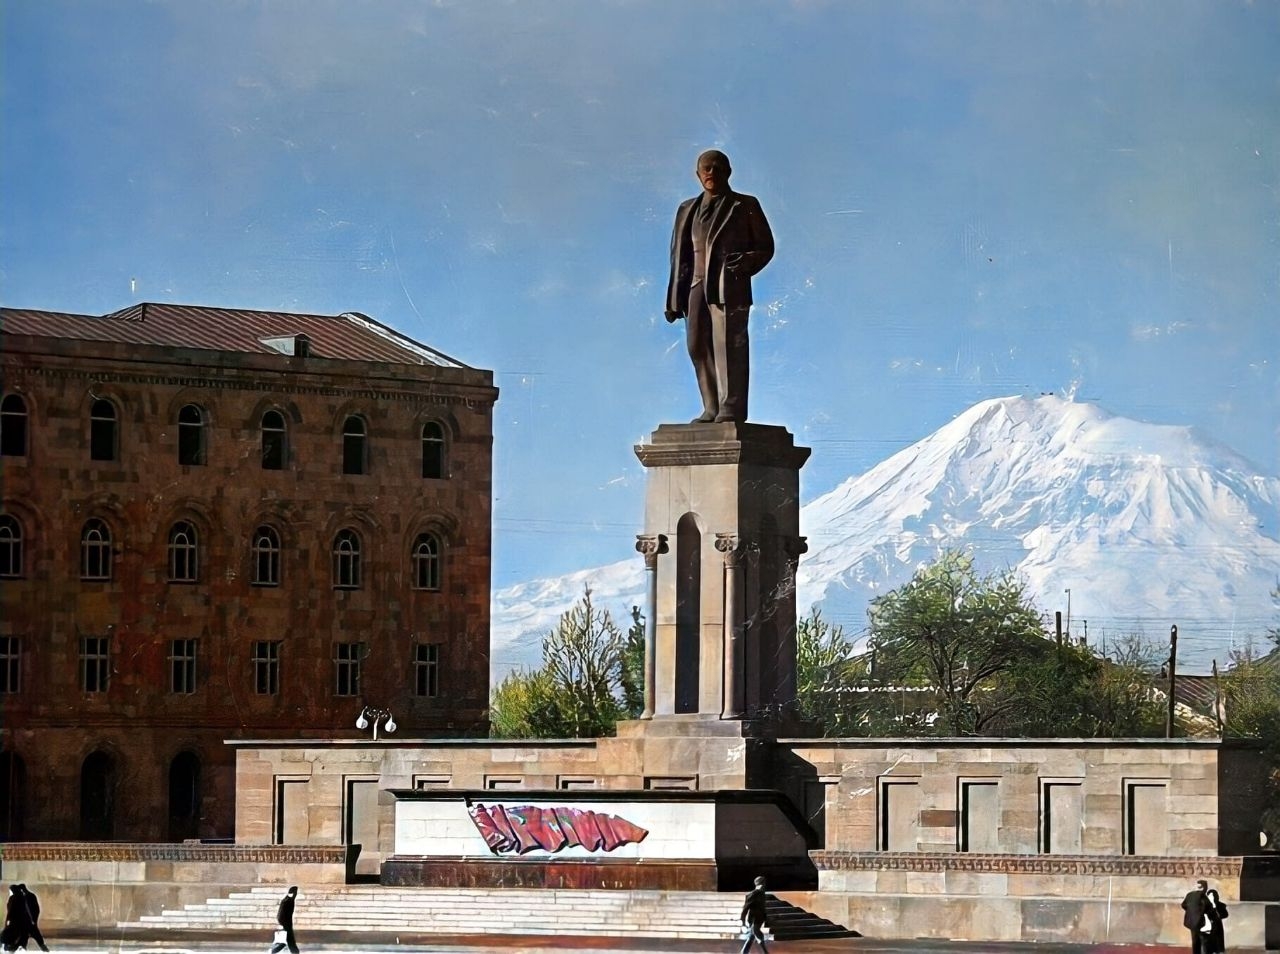 Площадь Республики Ереван, Армения